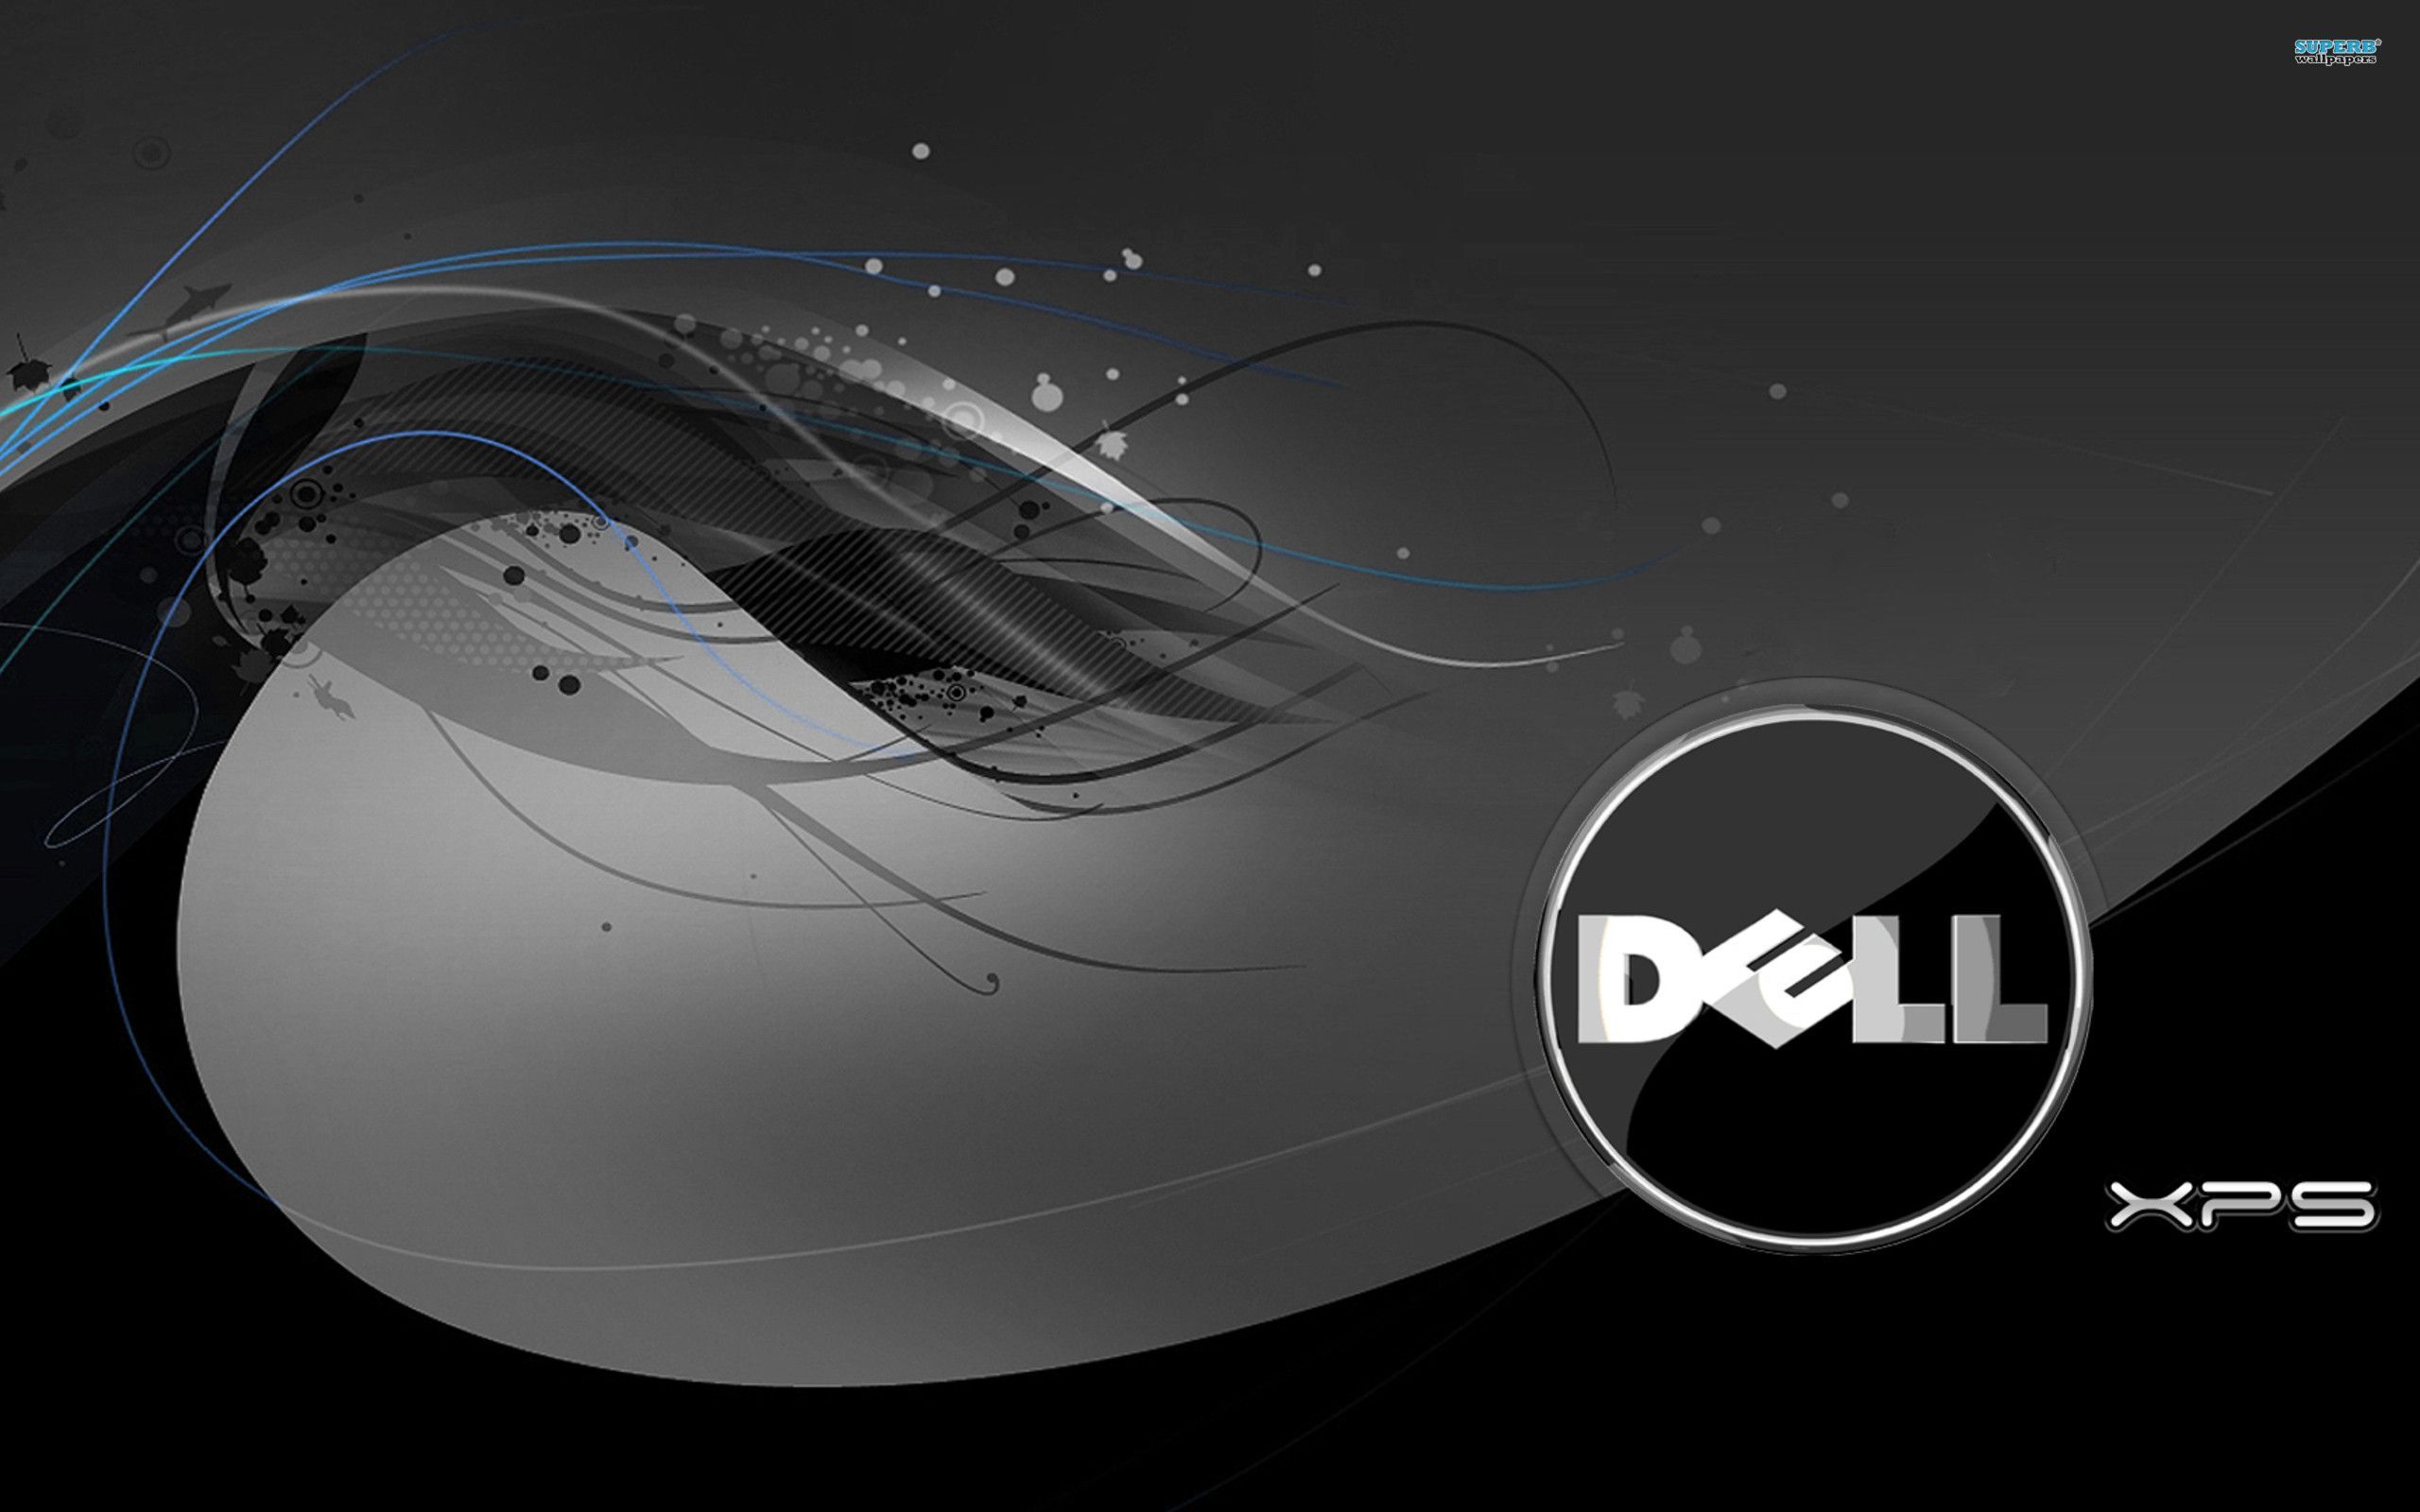 Bạn đang băn khoăn tìm kiếm hình nền phù hợp với desktop hiện tại? Đừng lo, Dell sẽ giúp bạn giải quyết vấn đề đó! Bộ sưu tập hình nền của Dell Desktop sẽ là lựa chọn hoàn hảo cho bạn, từ những hình ảnh đơn giản đến những bức tranh quyến rũ đến từ những họa sĩ nổi tiếng nhất.